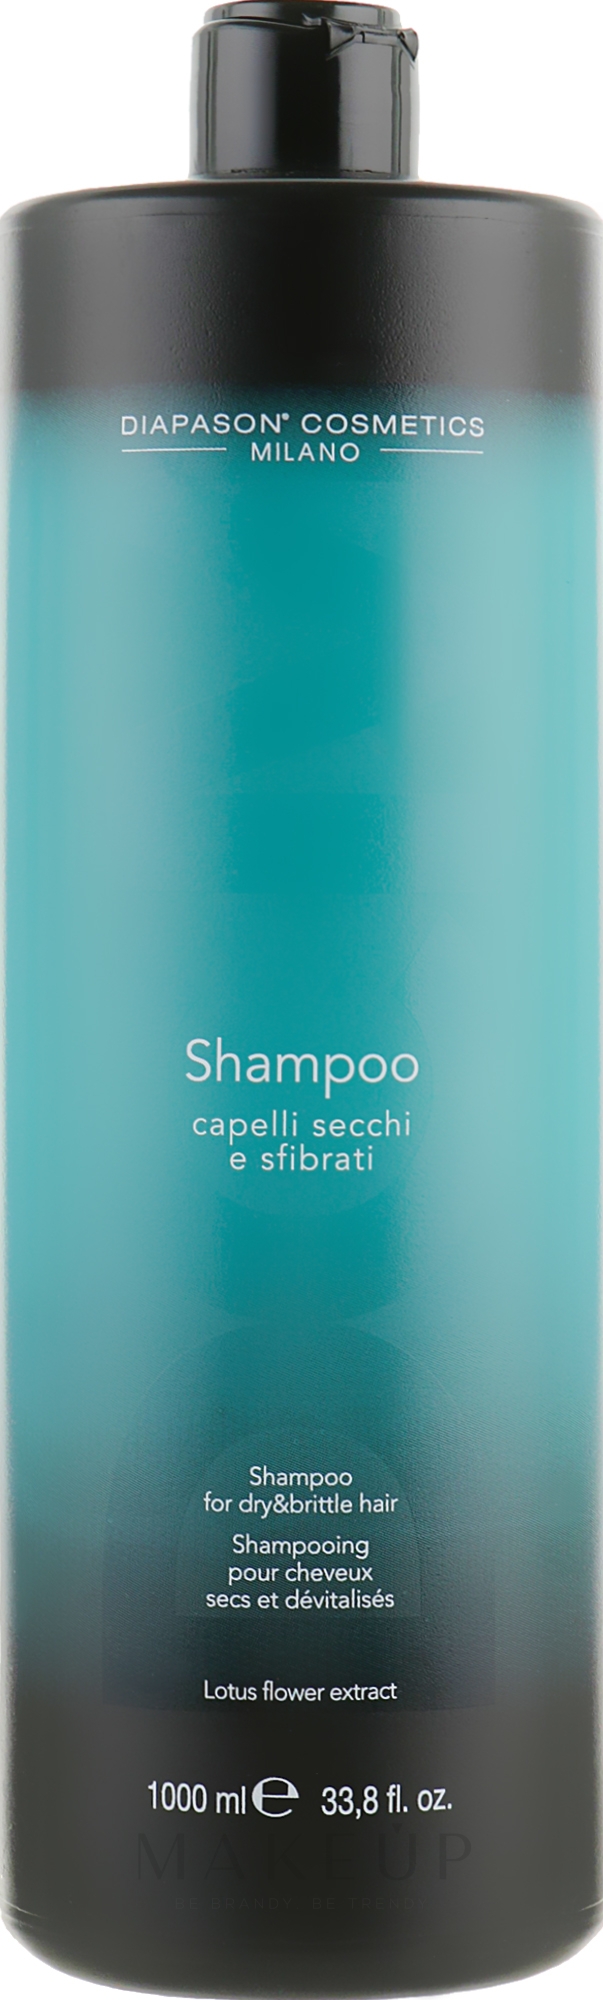 Regenerierendes Shampoo für trockenes und sprödes Haar - DCM Shampoo For Dry And Brittle Hair — Bild 1000 ml